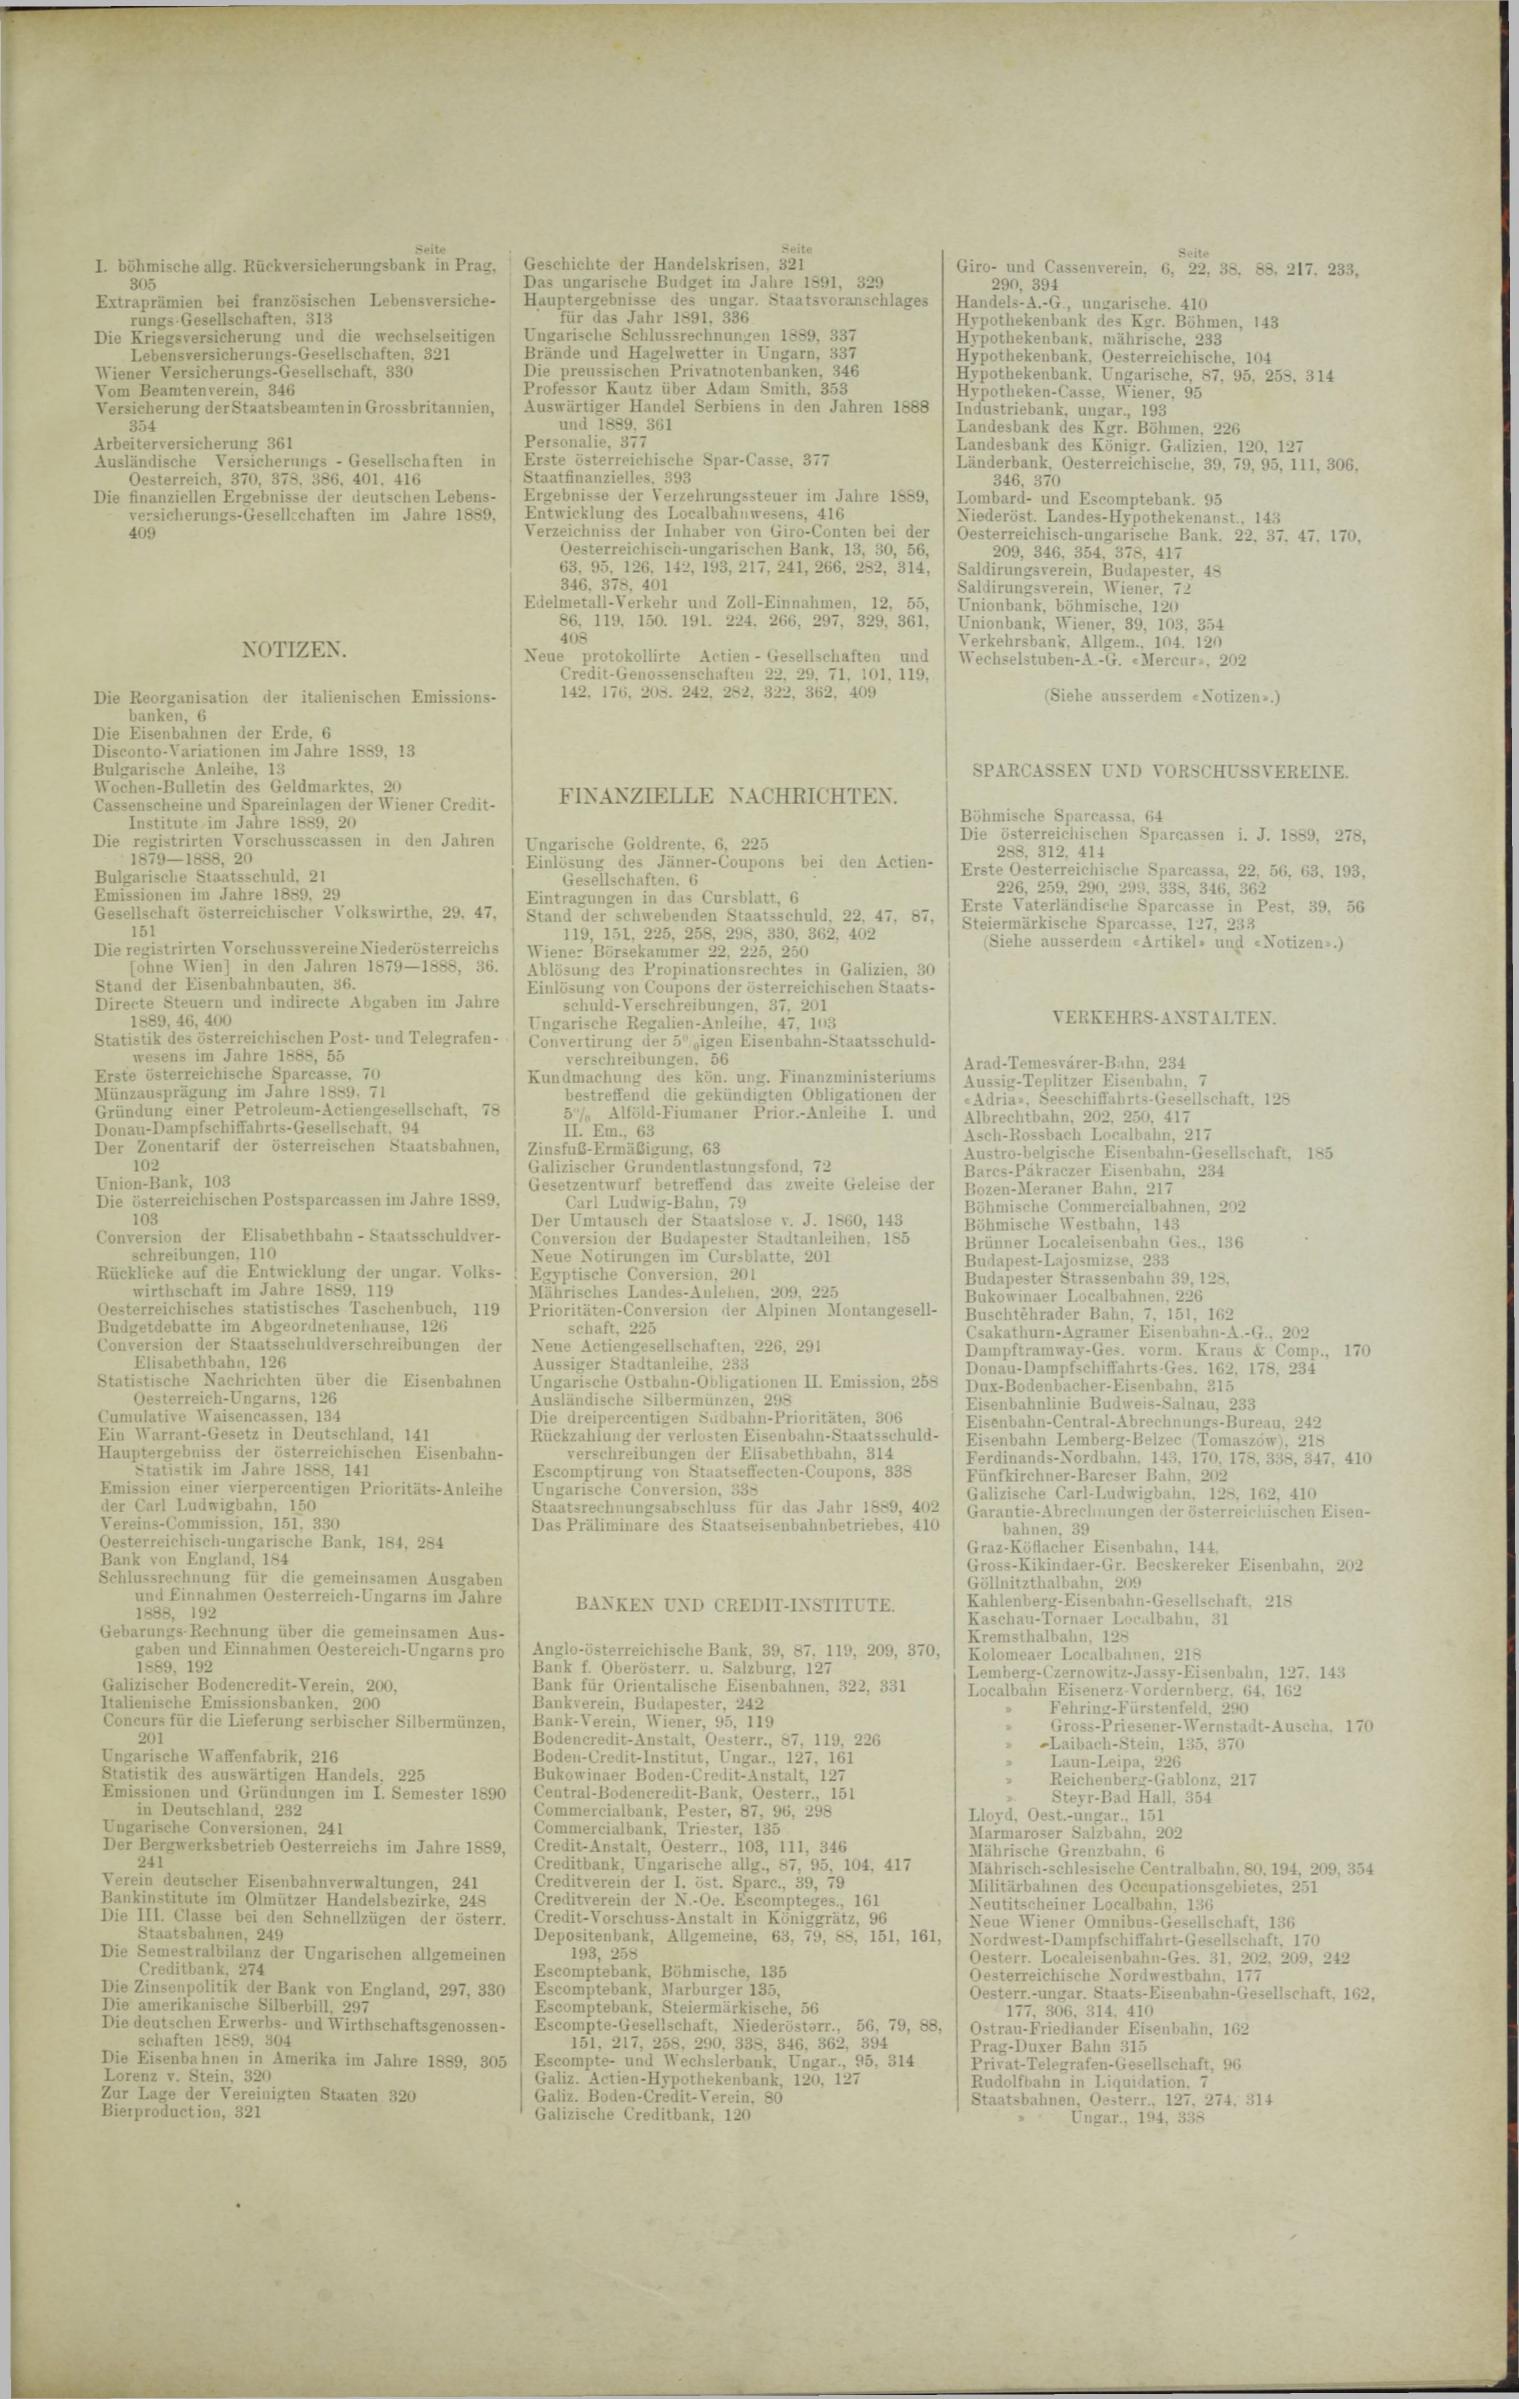 Der Tresor 20.03.1890 - Seite 11